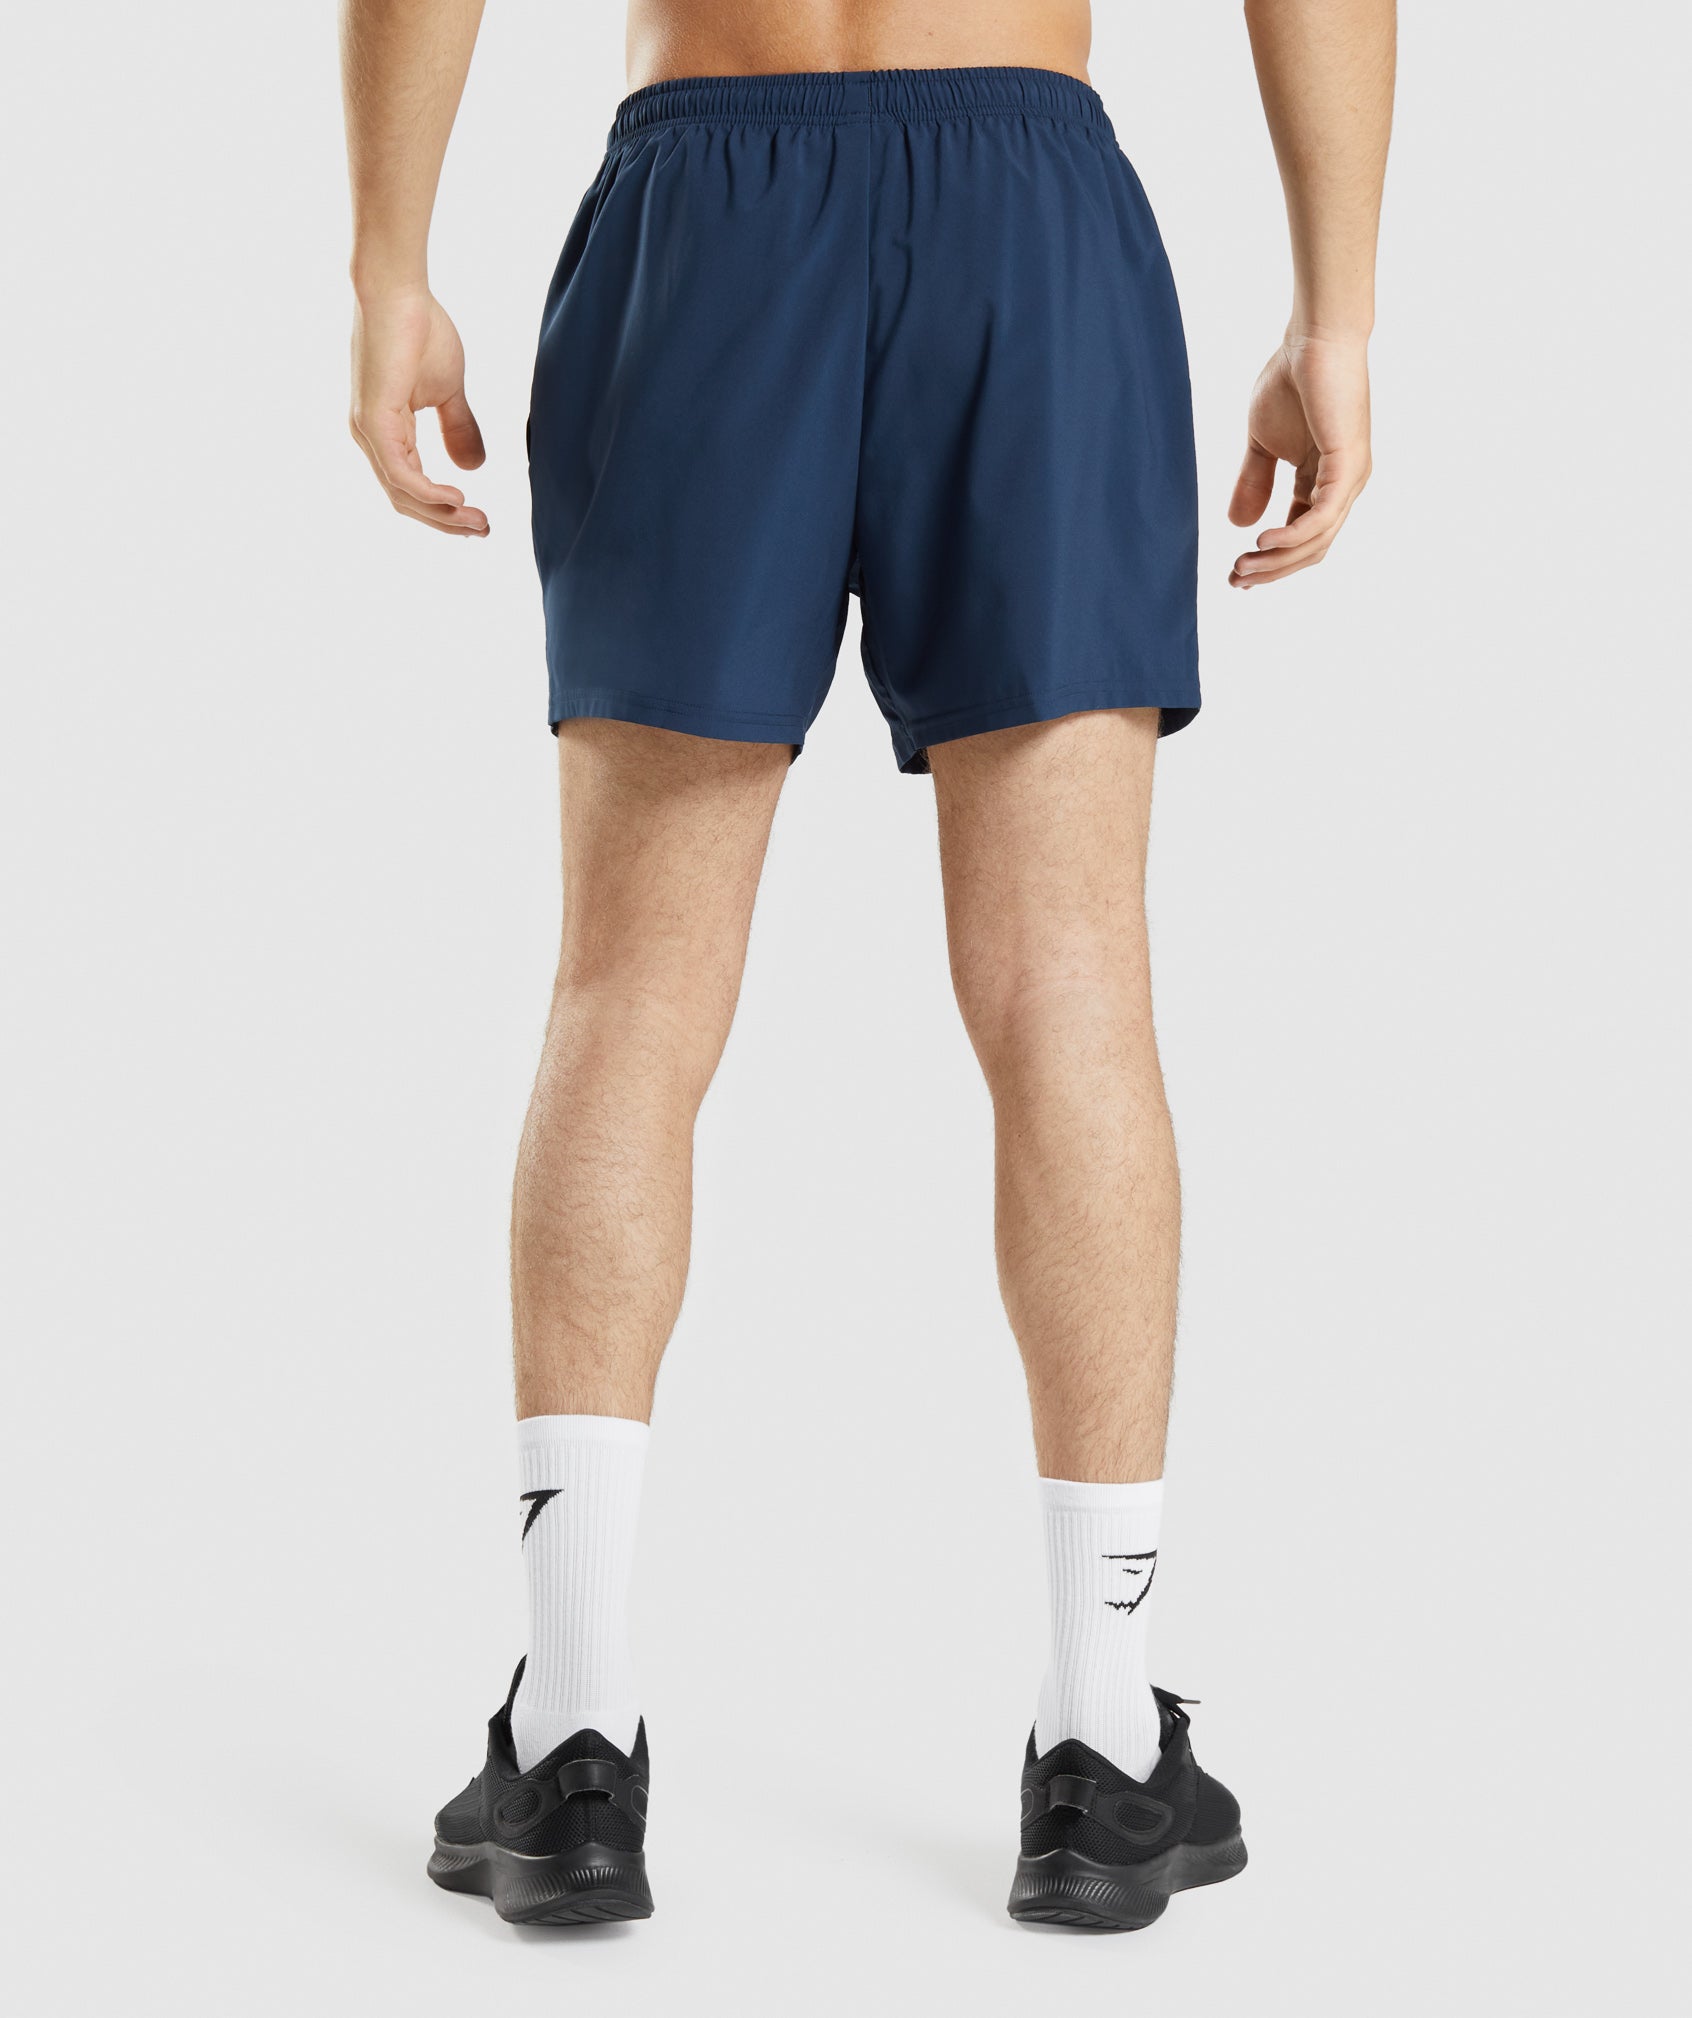  LIUZH - Pantalones cortos de fitness 2 en 1 para hombre, secado  rápido, para verano, gimnasio, ropa deportiva (color C, tamaño: XXXL  Código) : Ropa, Zapatos y Joyería